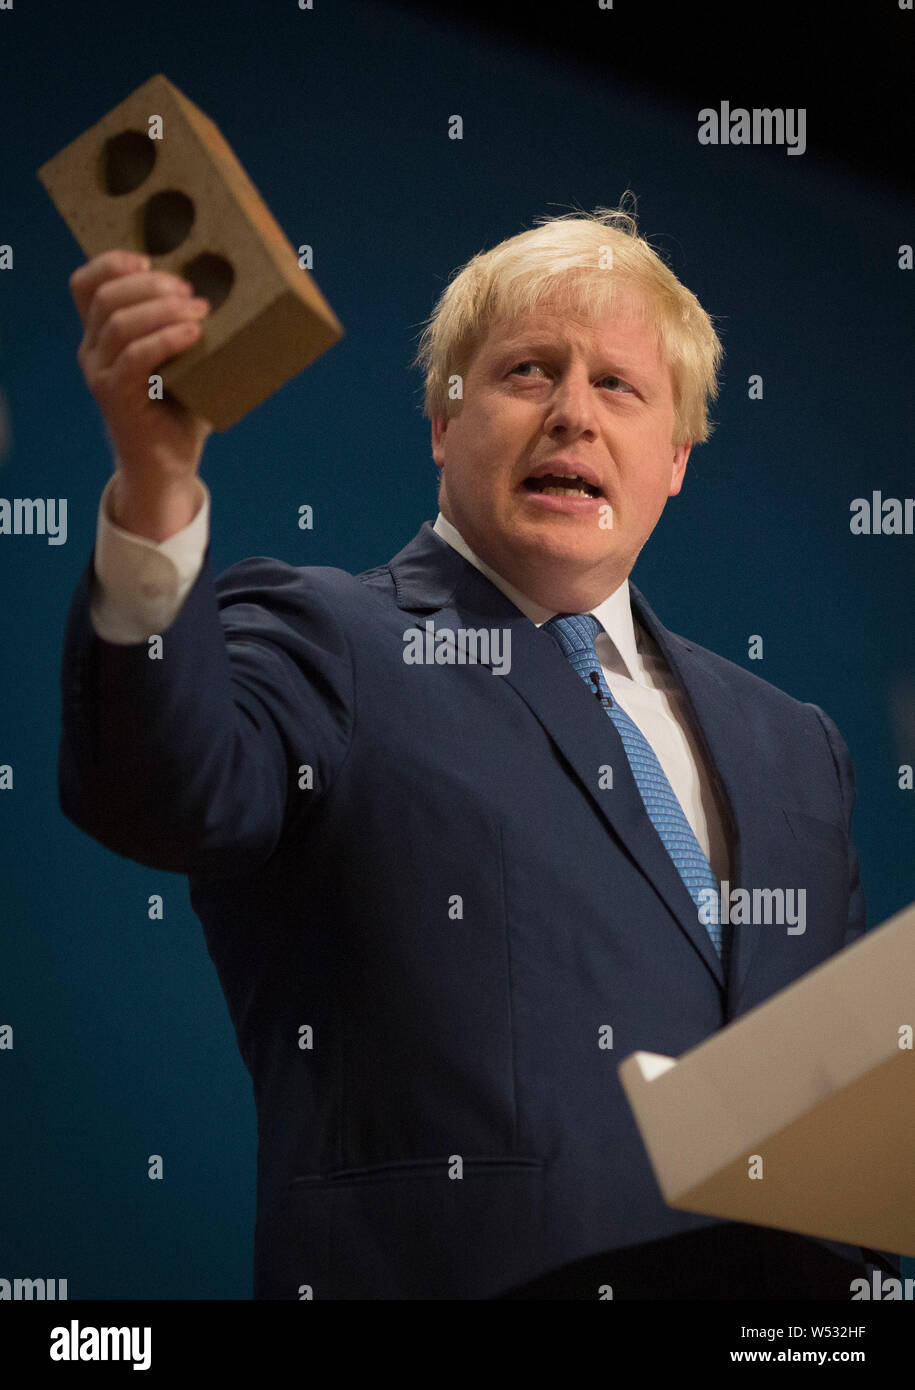 Boris Johnson in einer Rede auf dem Parteitag der Konservativen Partei 2014 in Birmingham, England am 30. September 2014. Stockfoto